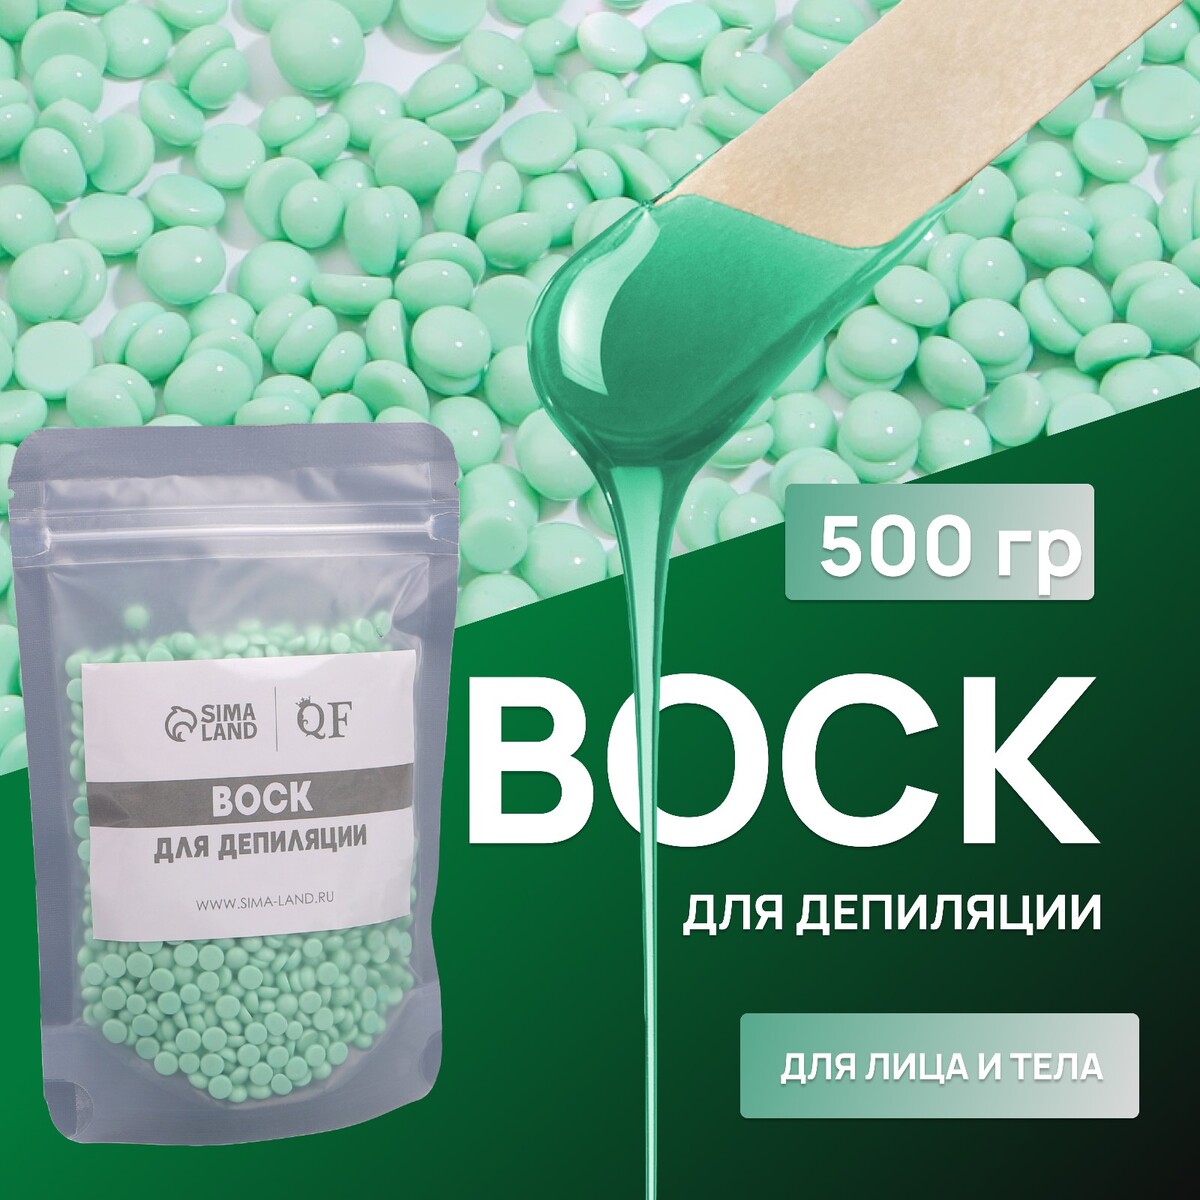 Воск для депиляции, пленочный, в гранулах, 500 гр, цвет зеленый